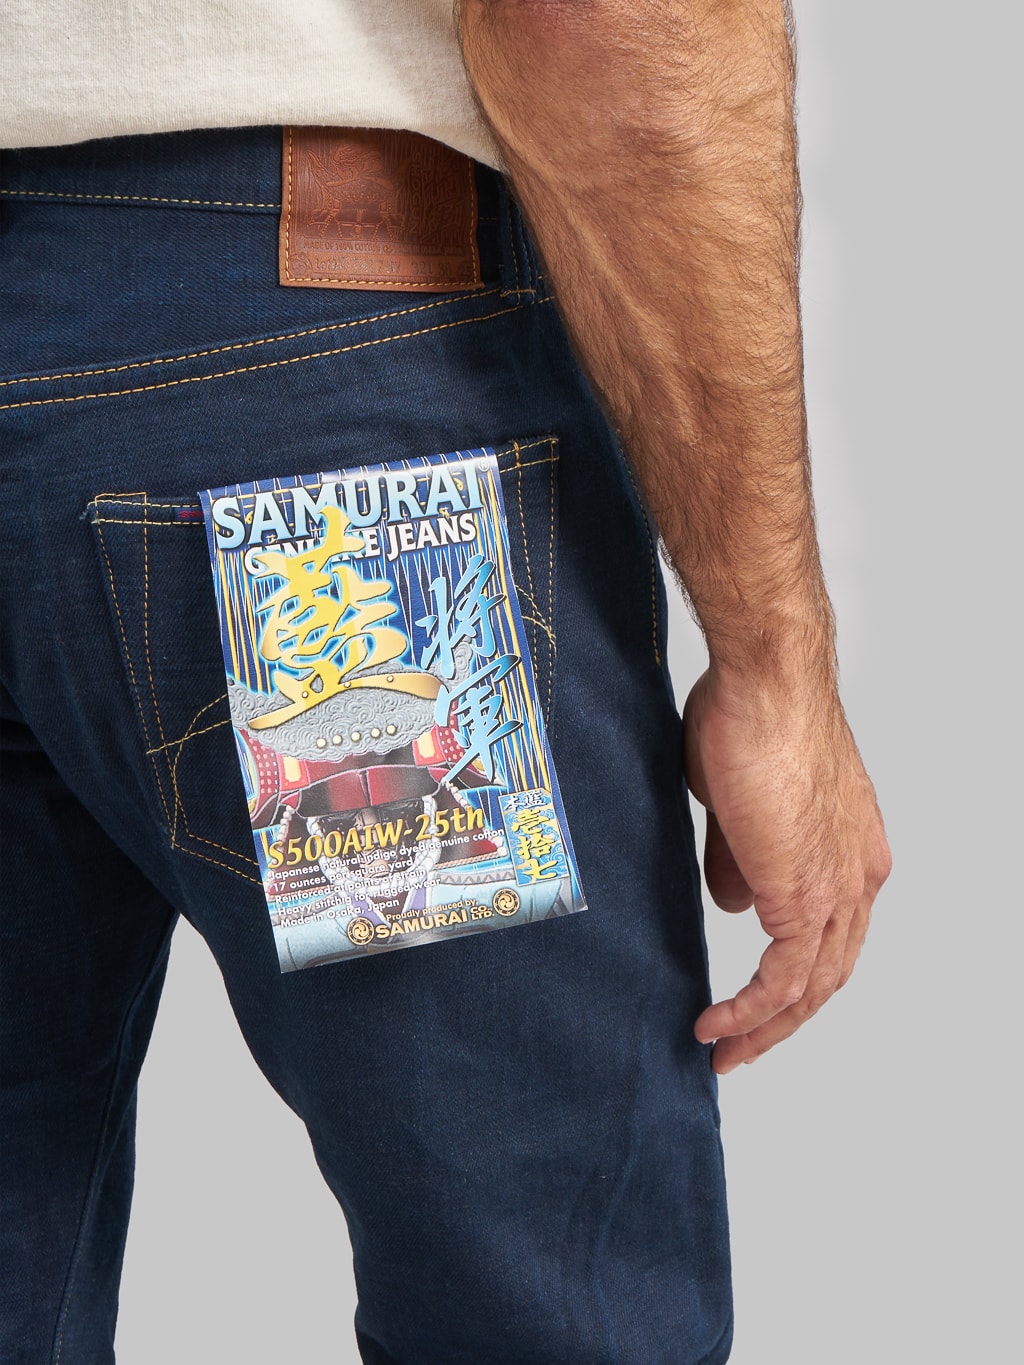 Samurai Jeans S500AIW-25TH "25th Anniversary AI-Shogun" Double Natural Indigo Regular Straight Jeans